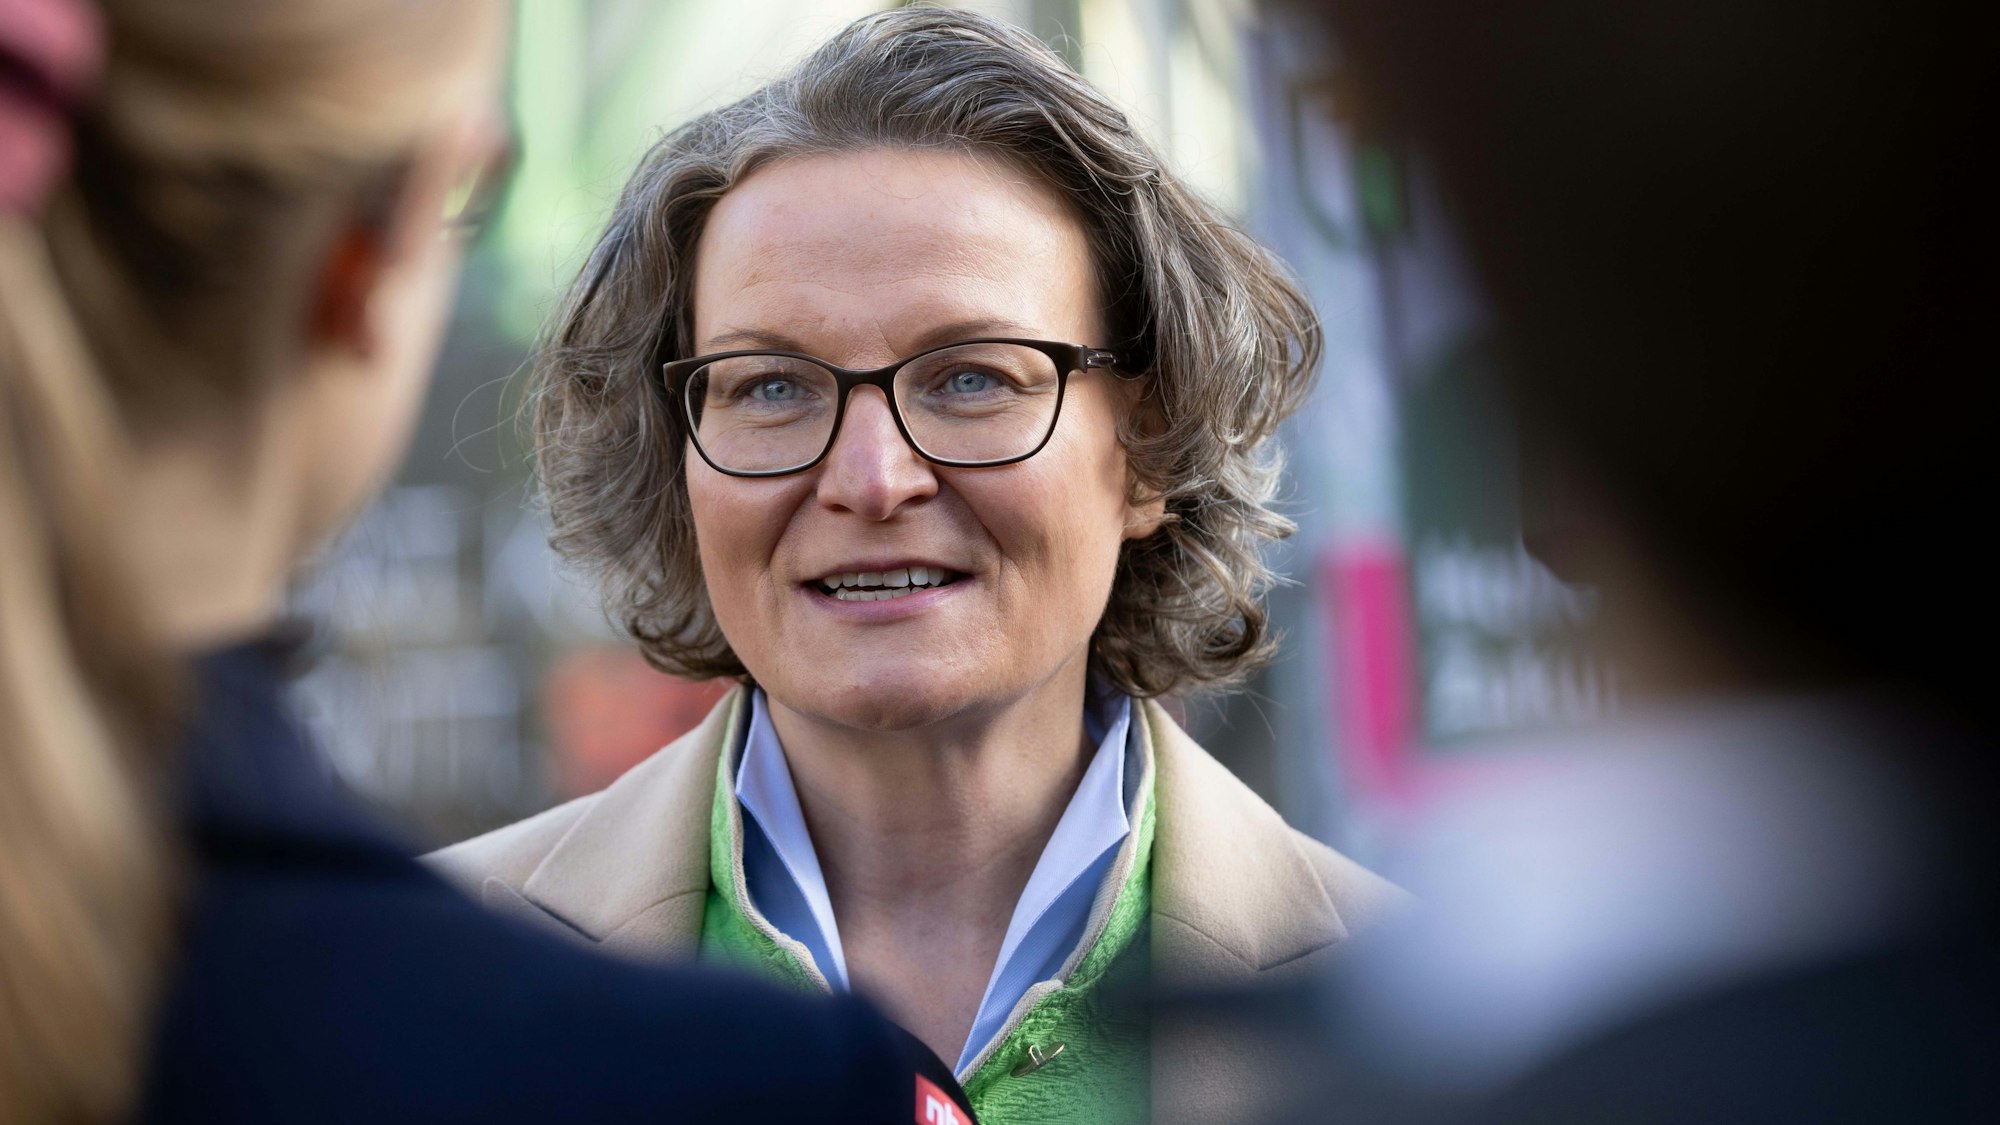 Ina Scharrenbach (CDU), Heimatministerin von Nordrhein-Westfalen, ist während eines Baustellenbesuchs im Porträt zu sehen. Sie trägt einen beigen Mantel und ein buntes Halstuch.